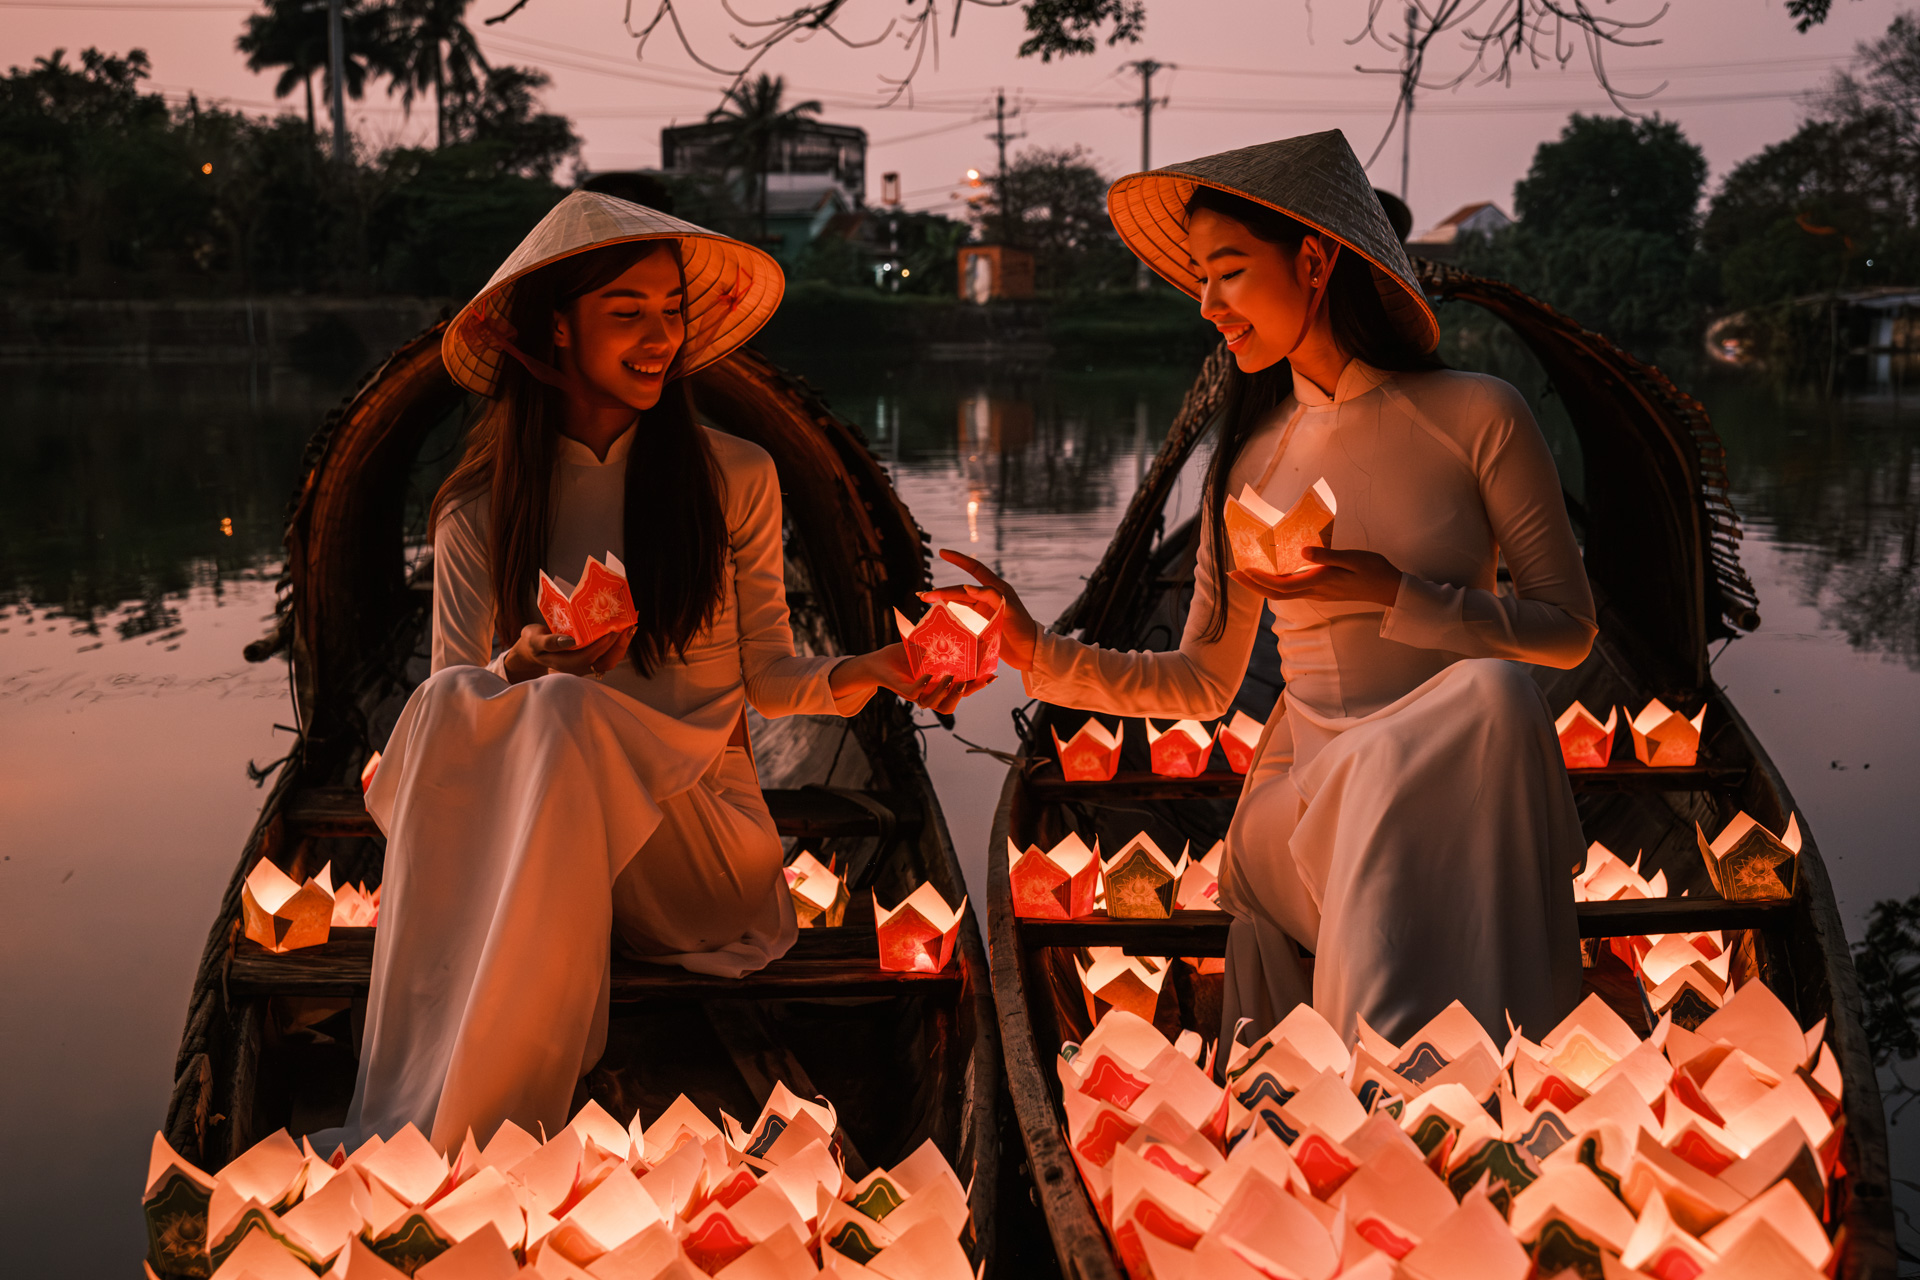 Models bei einer traditionellen Kerzenzeremonie auf Booten. 